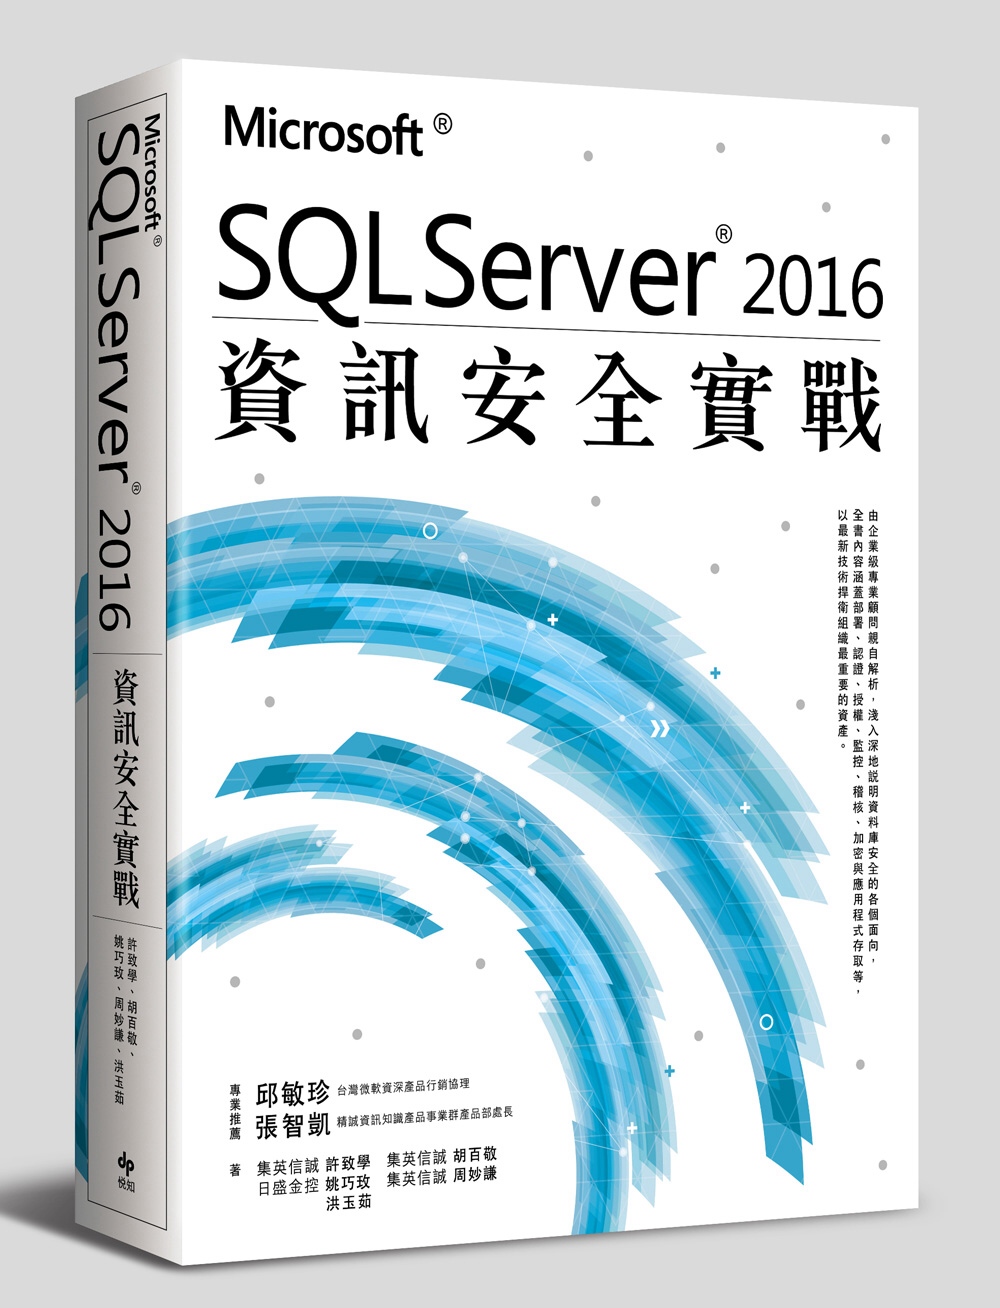 暢銷書】Microsoft SQL Server 2016資訊安全實戰[Microsoft Sql Server 2016 Zi Xun An  Quan Shi Zhan]＊電腦資訊類＊ @ 【熱門暢銷書單】～新書介紹。好書推薦:: 痞客邦::